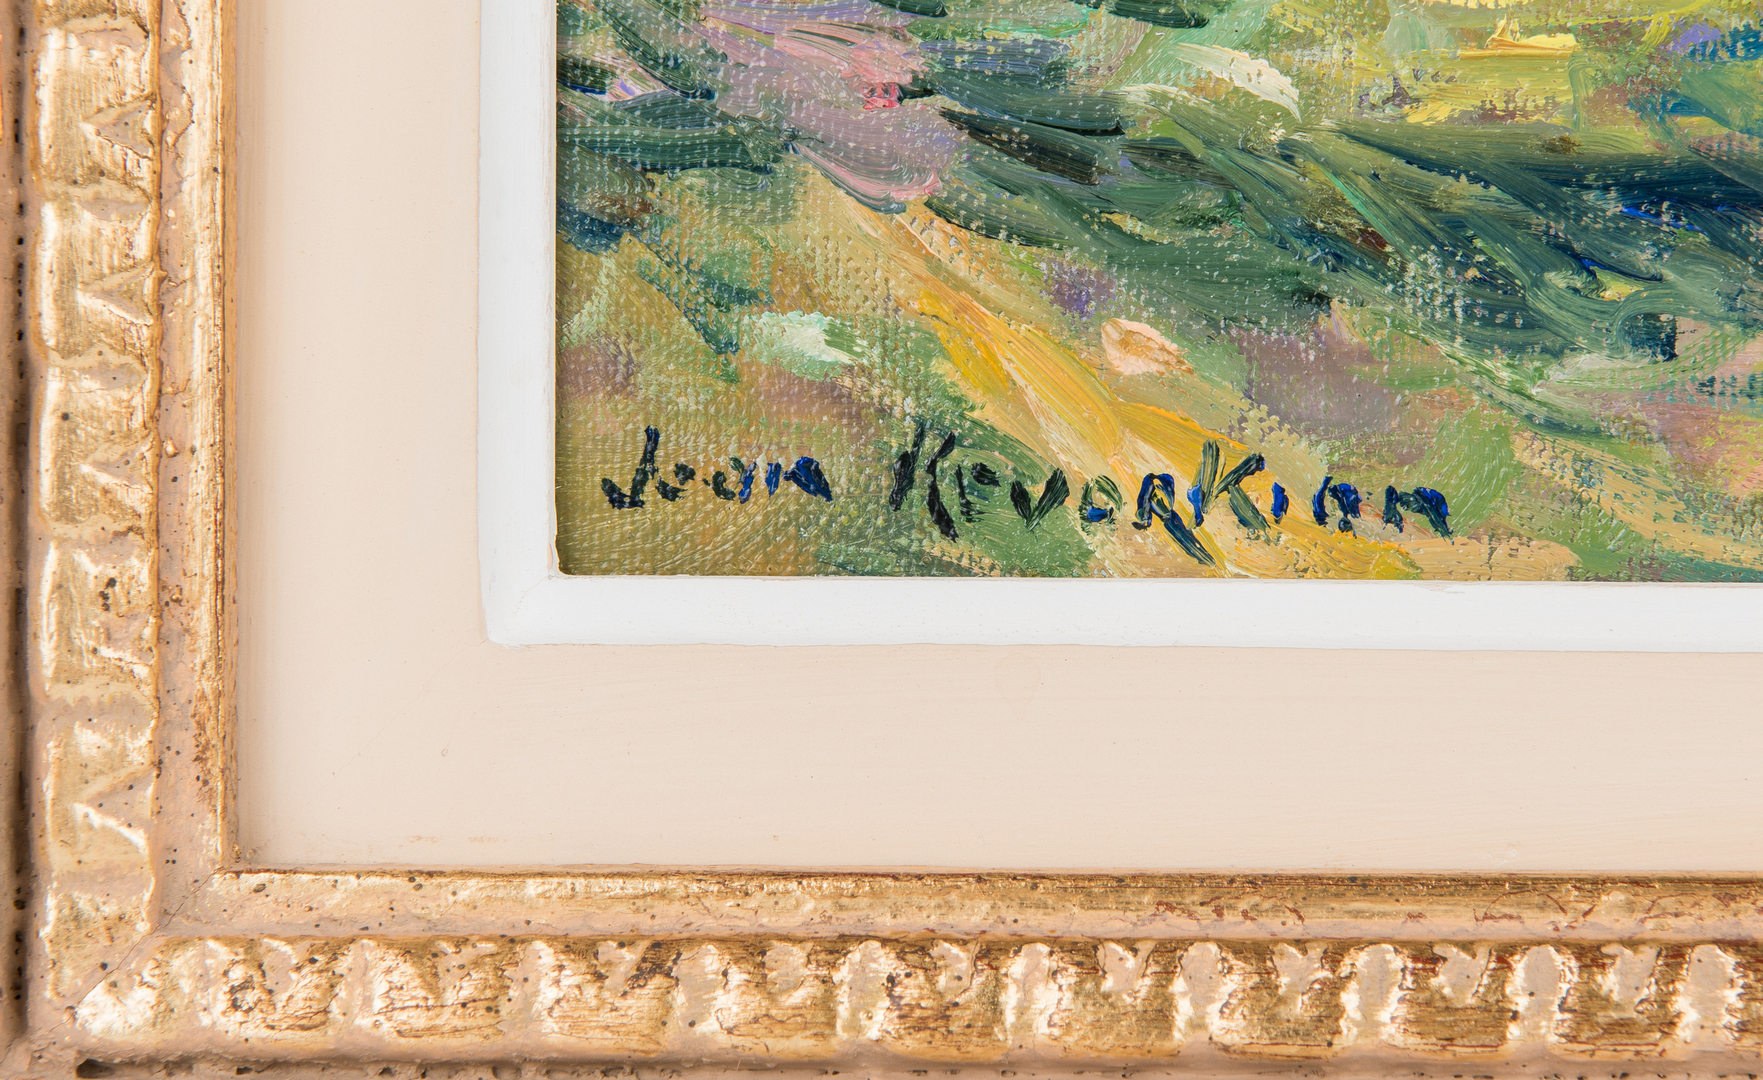 Lot 305: Jean Kevorkian O/C Painting, Pastoral Landscape